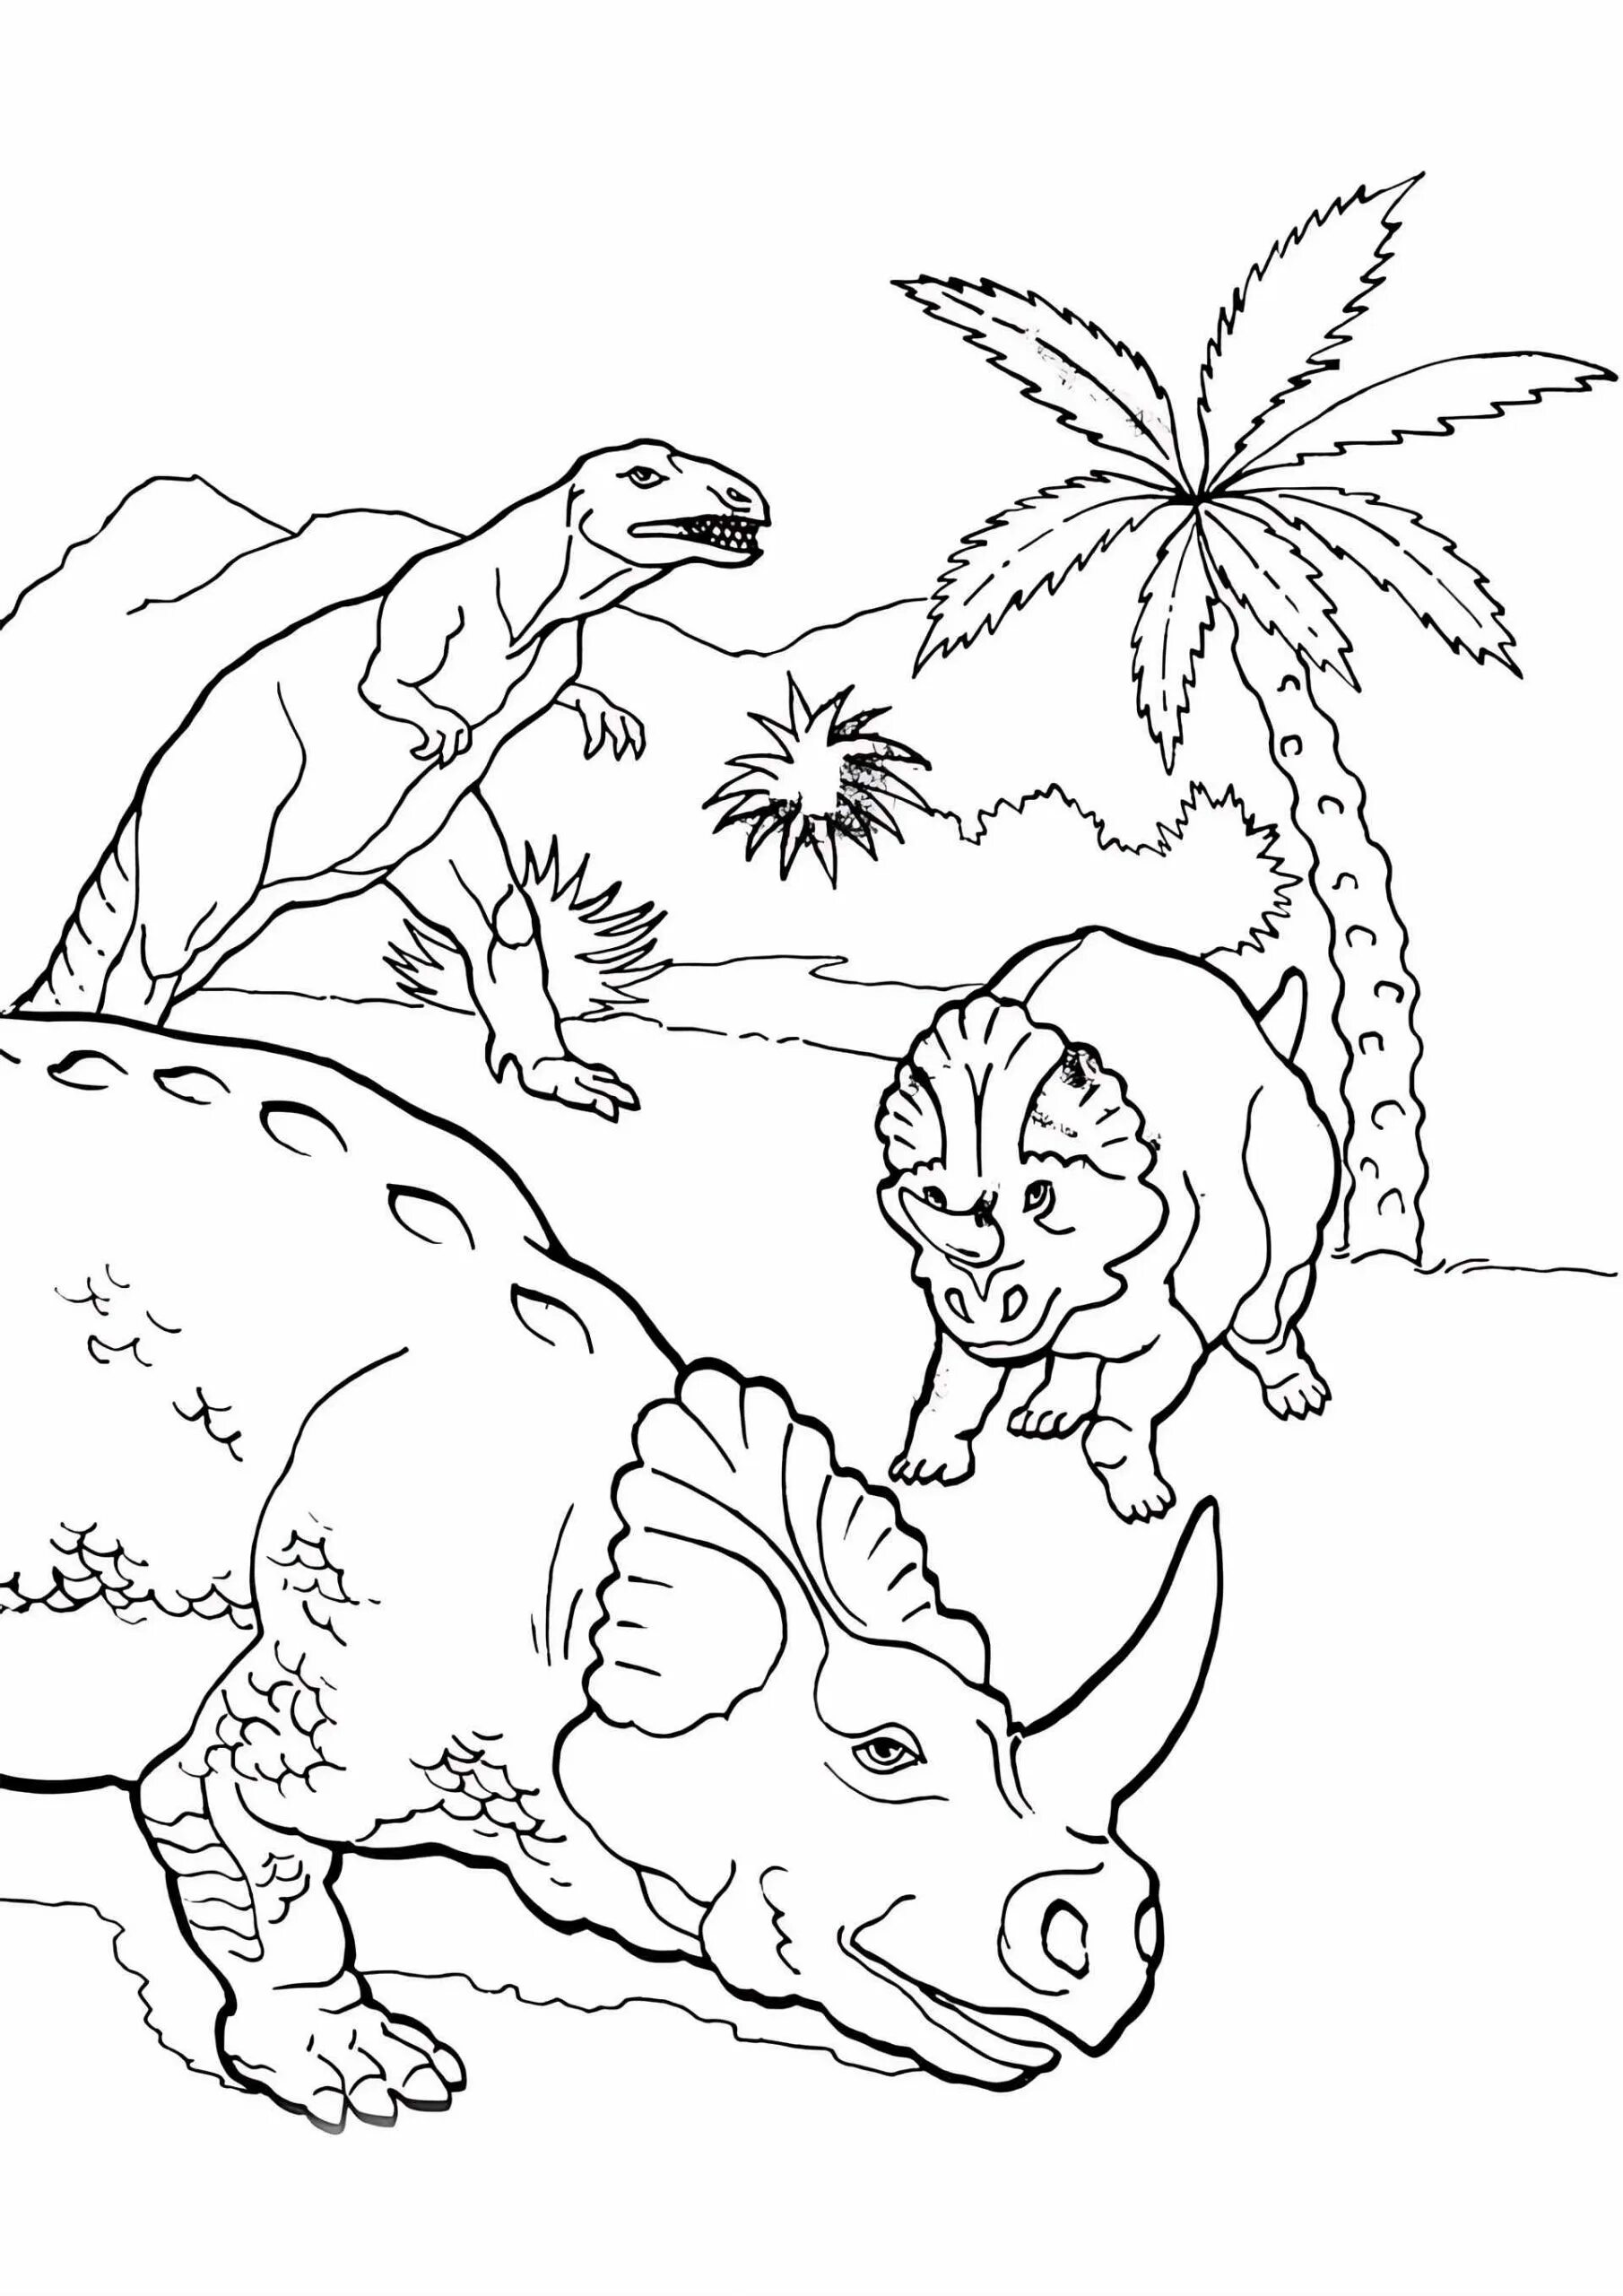 Раскраска динозавр формат а4. Динозавры / раскраска. Динозавр раскраска для детей. Раскраски для мальчиков динозавры. Динозавры картинки раскраски.